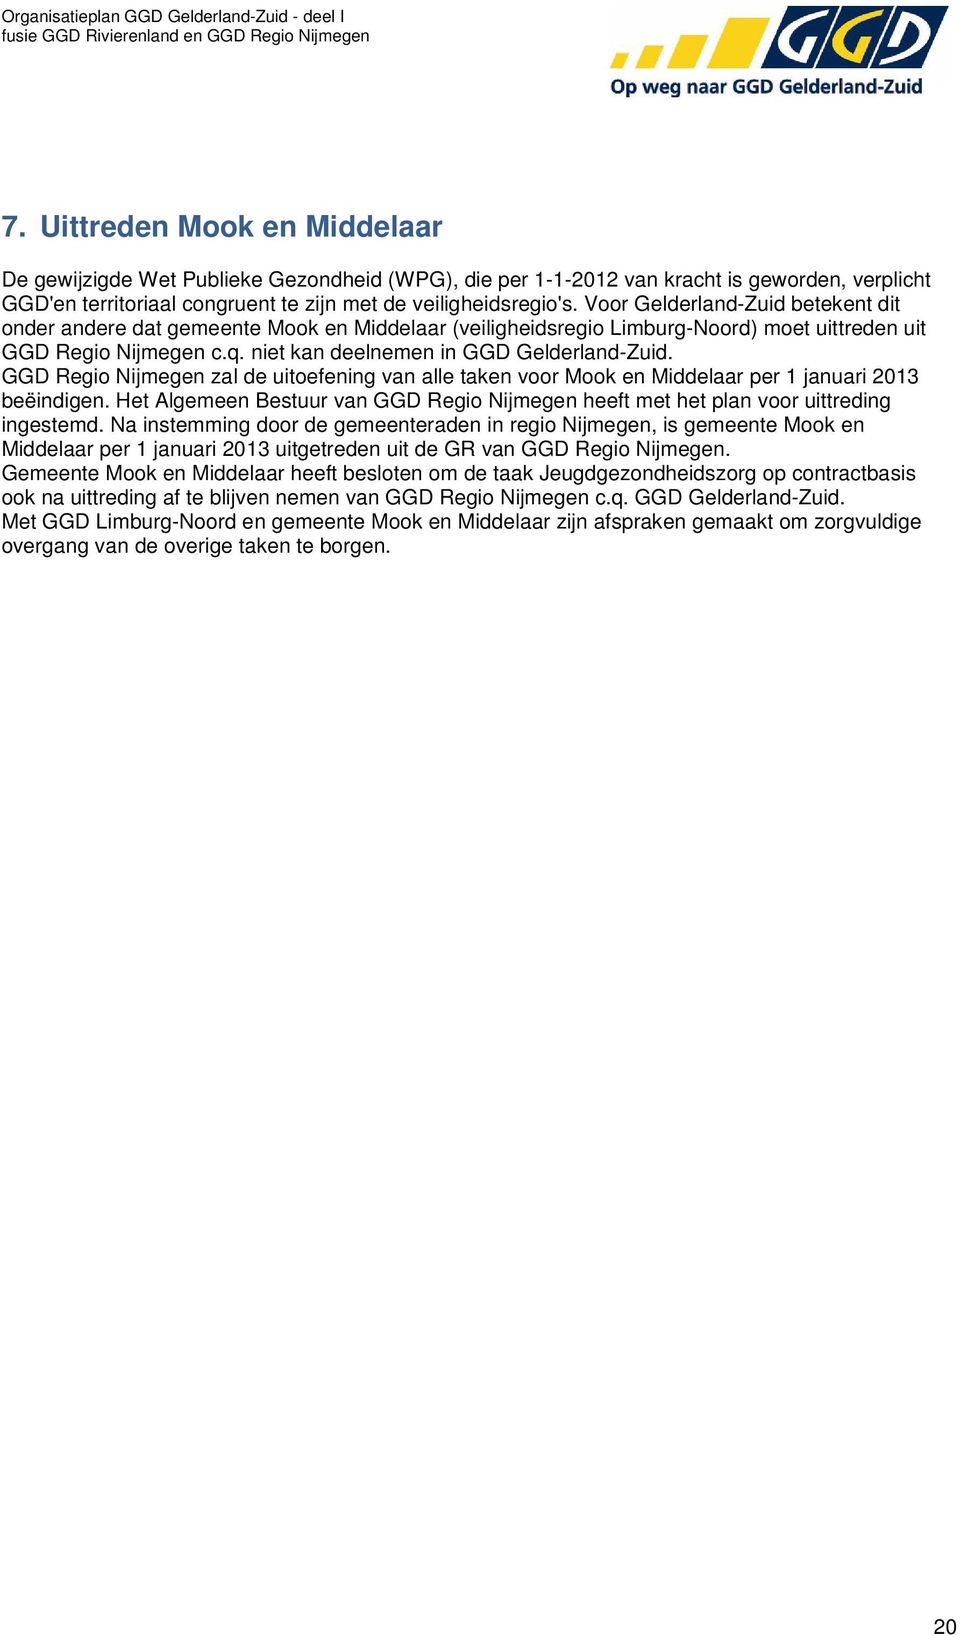 GGD Regio Nijmegen zal de uitoefening van alle taken voor Mook en Middelaar per 1 januari 2013 beëindigen. Het Algemeen Bestuur van GGD Regio Nijmegen heeft met het plan voor uittreding ingestemd.